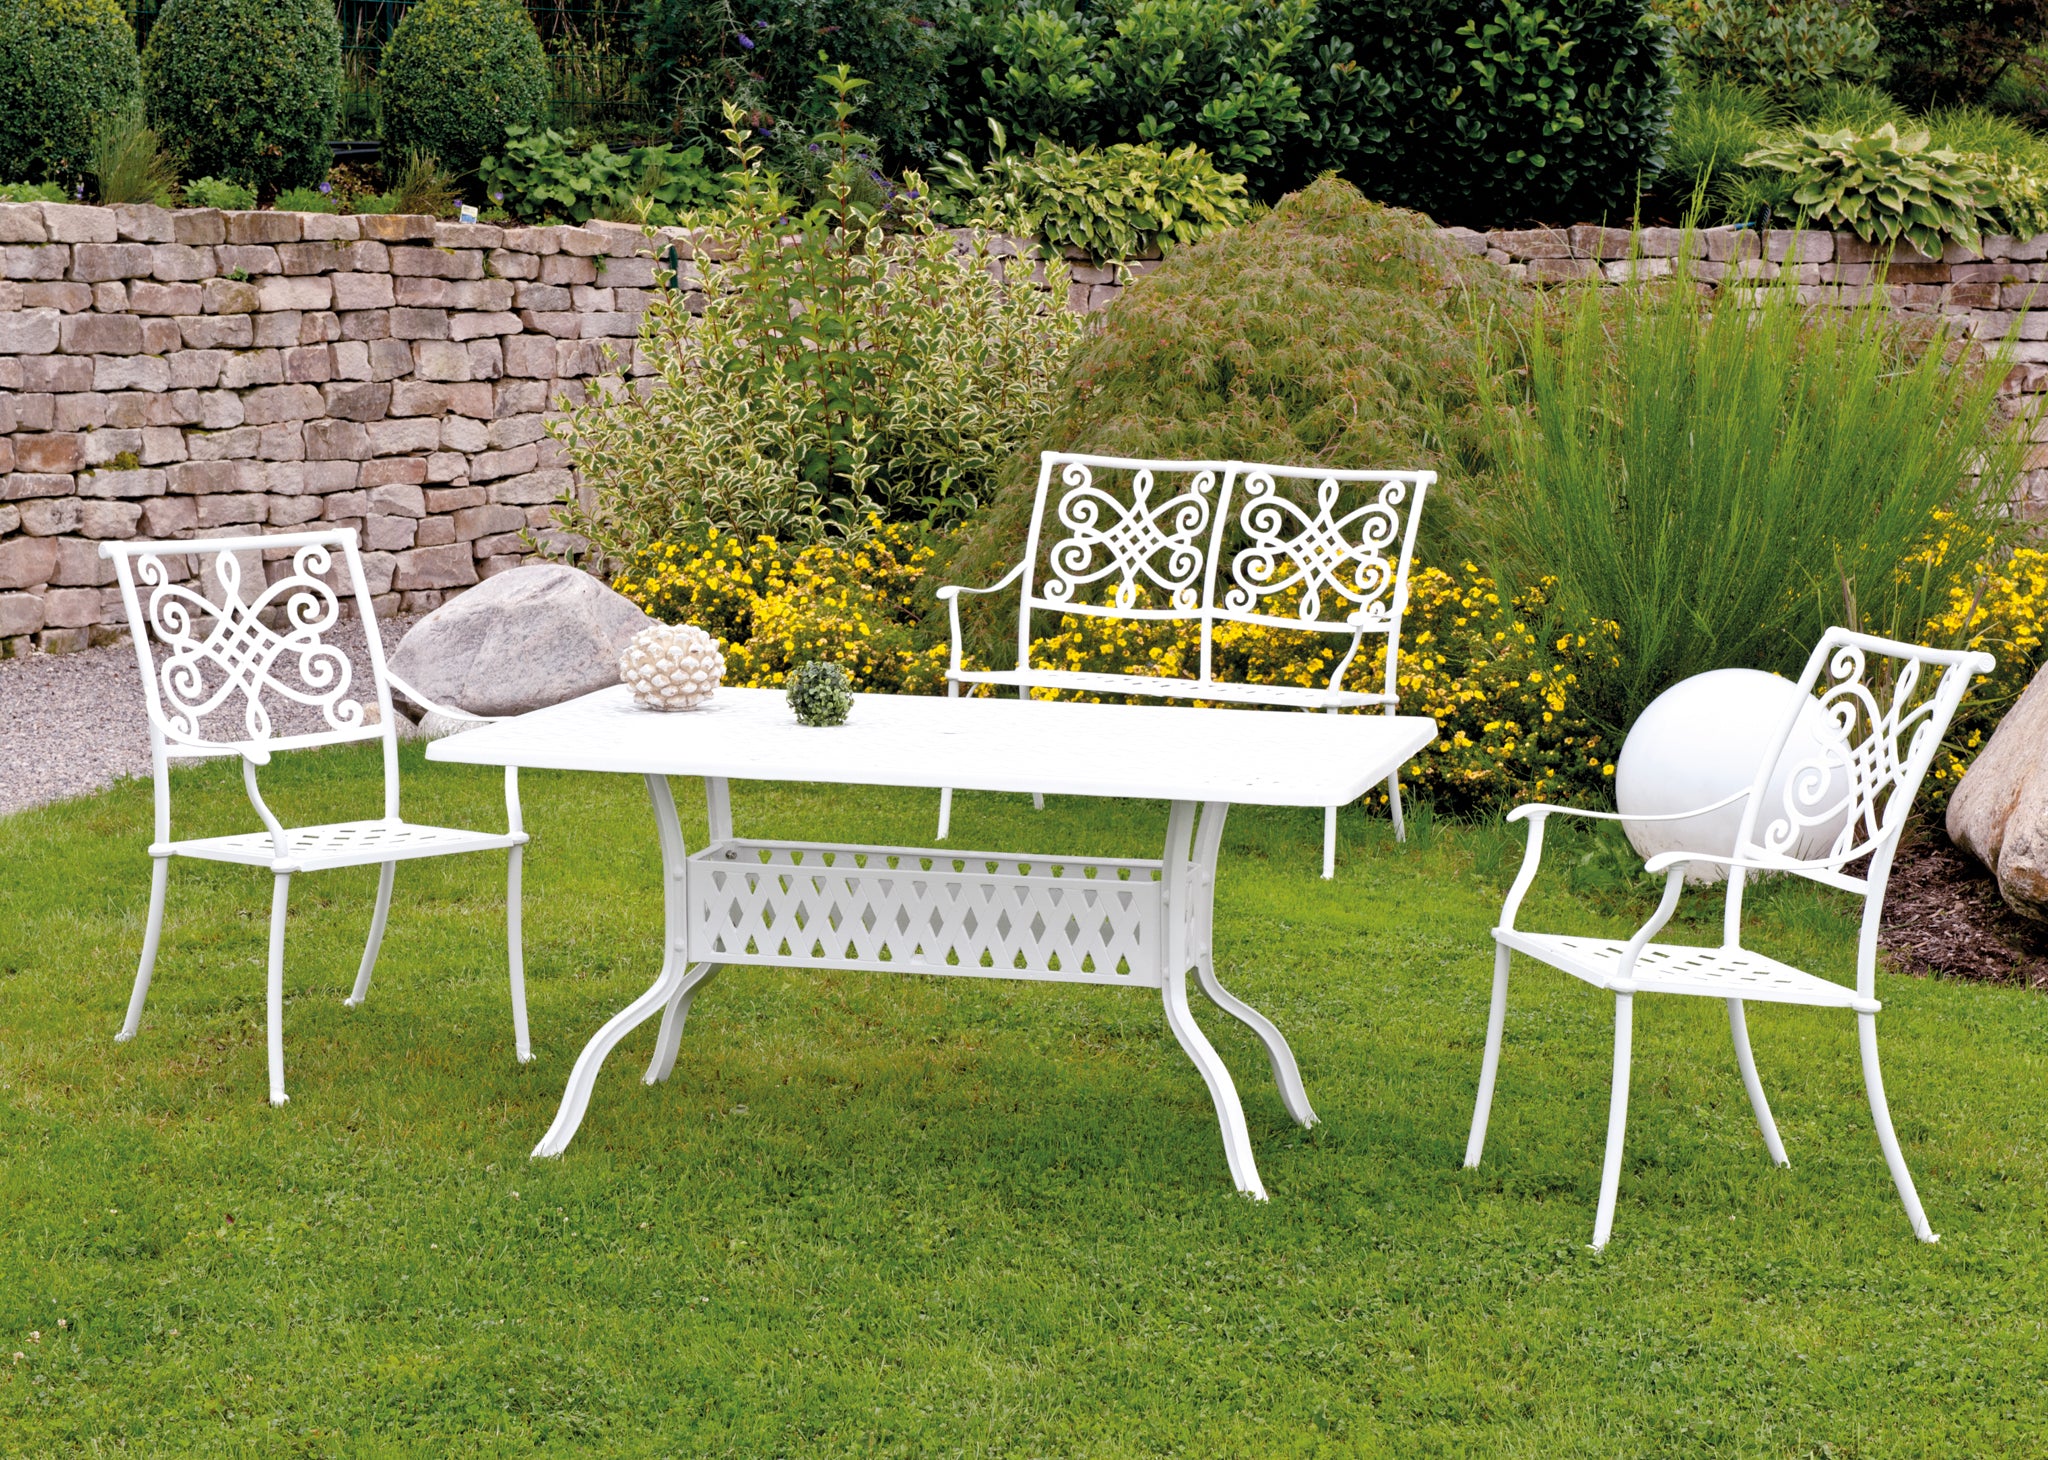 Aluguss-Tisch, 120cm, weiß